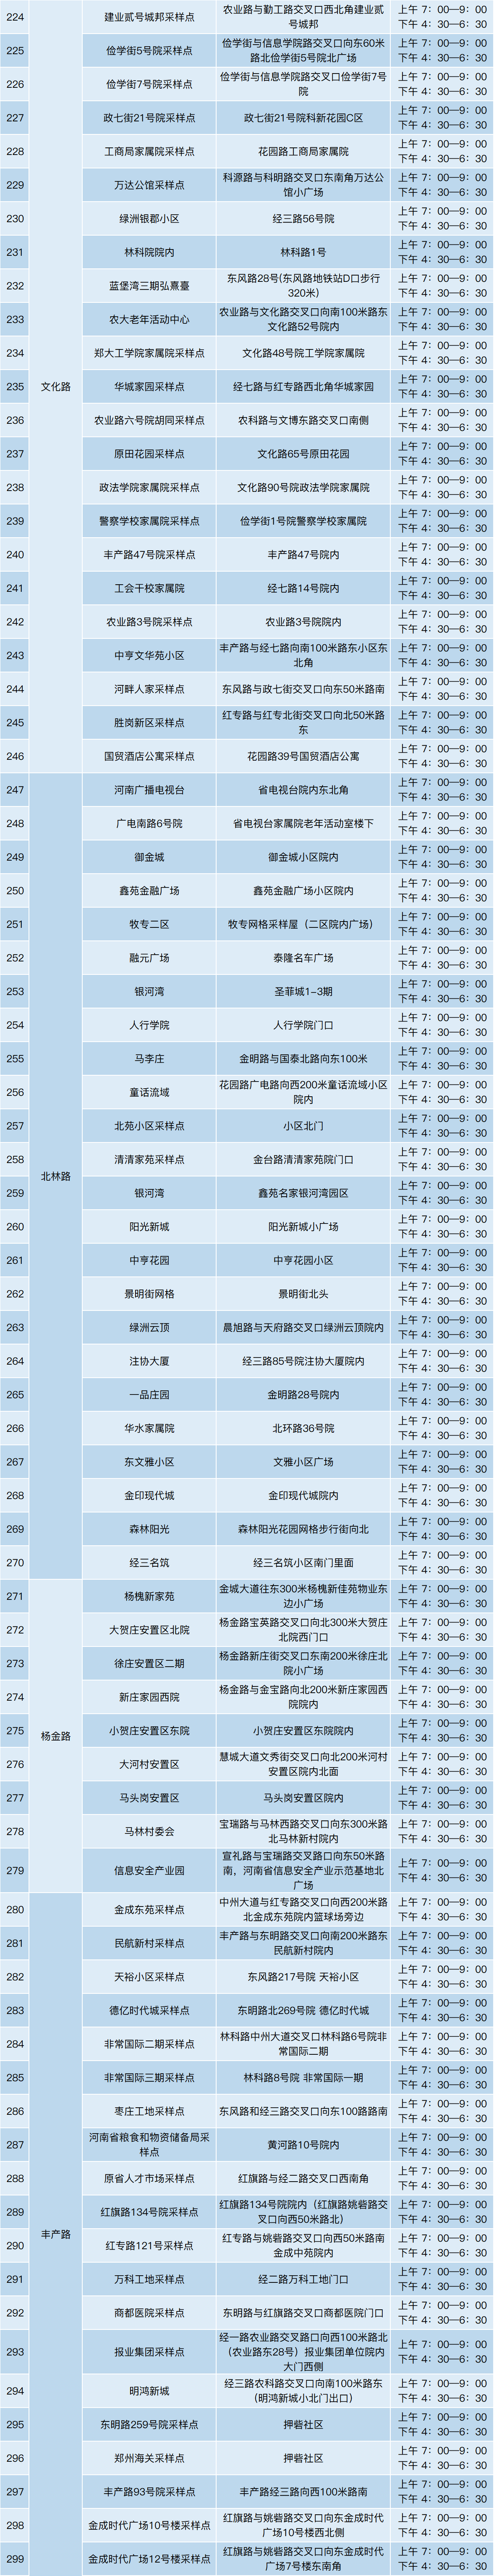 郑州市金水区公布核酸采样点位(内附采样时间)